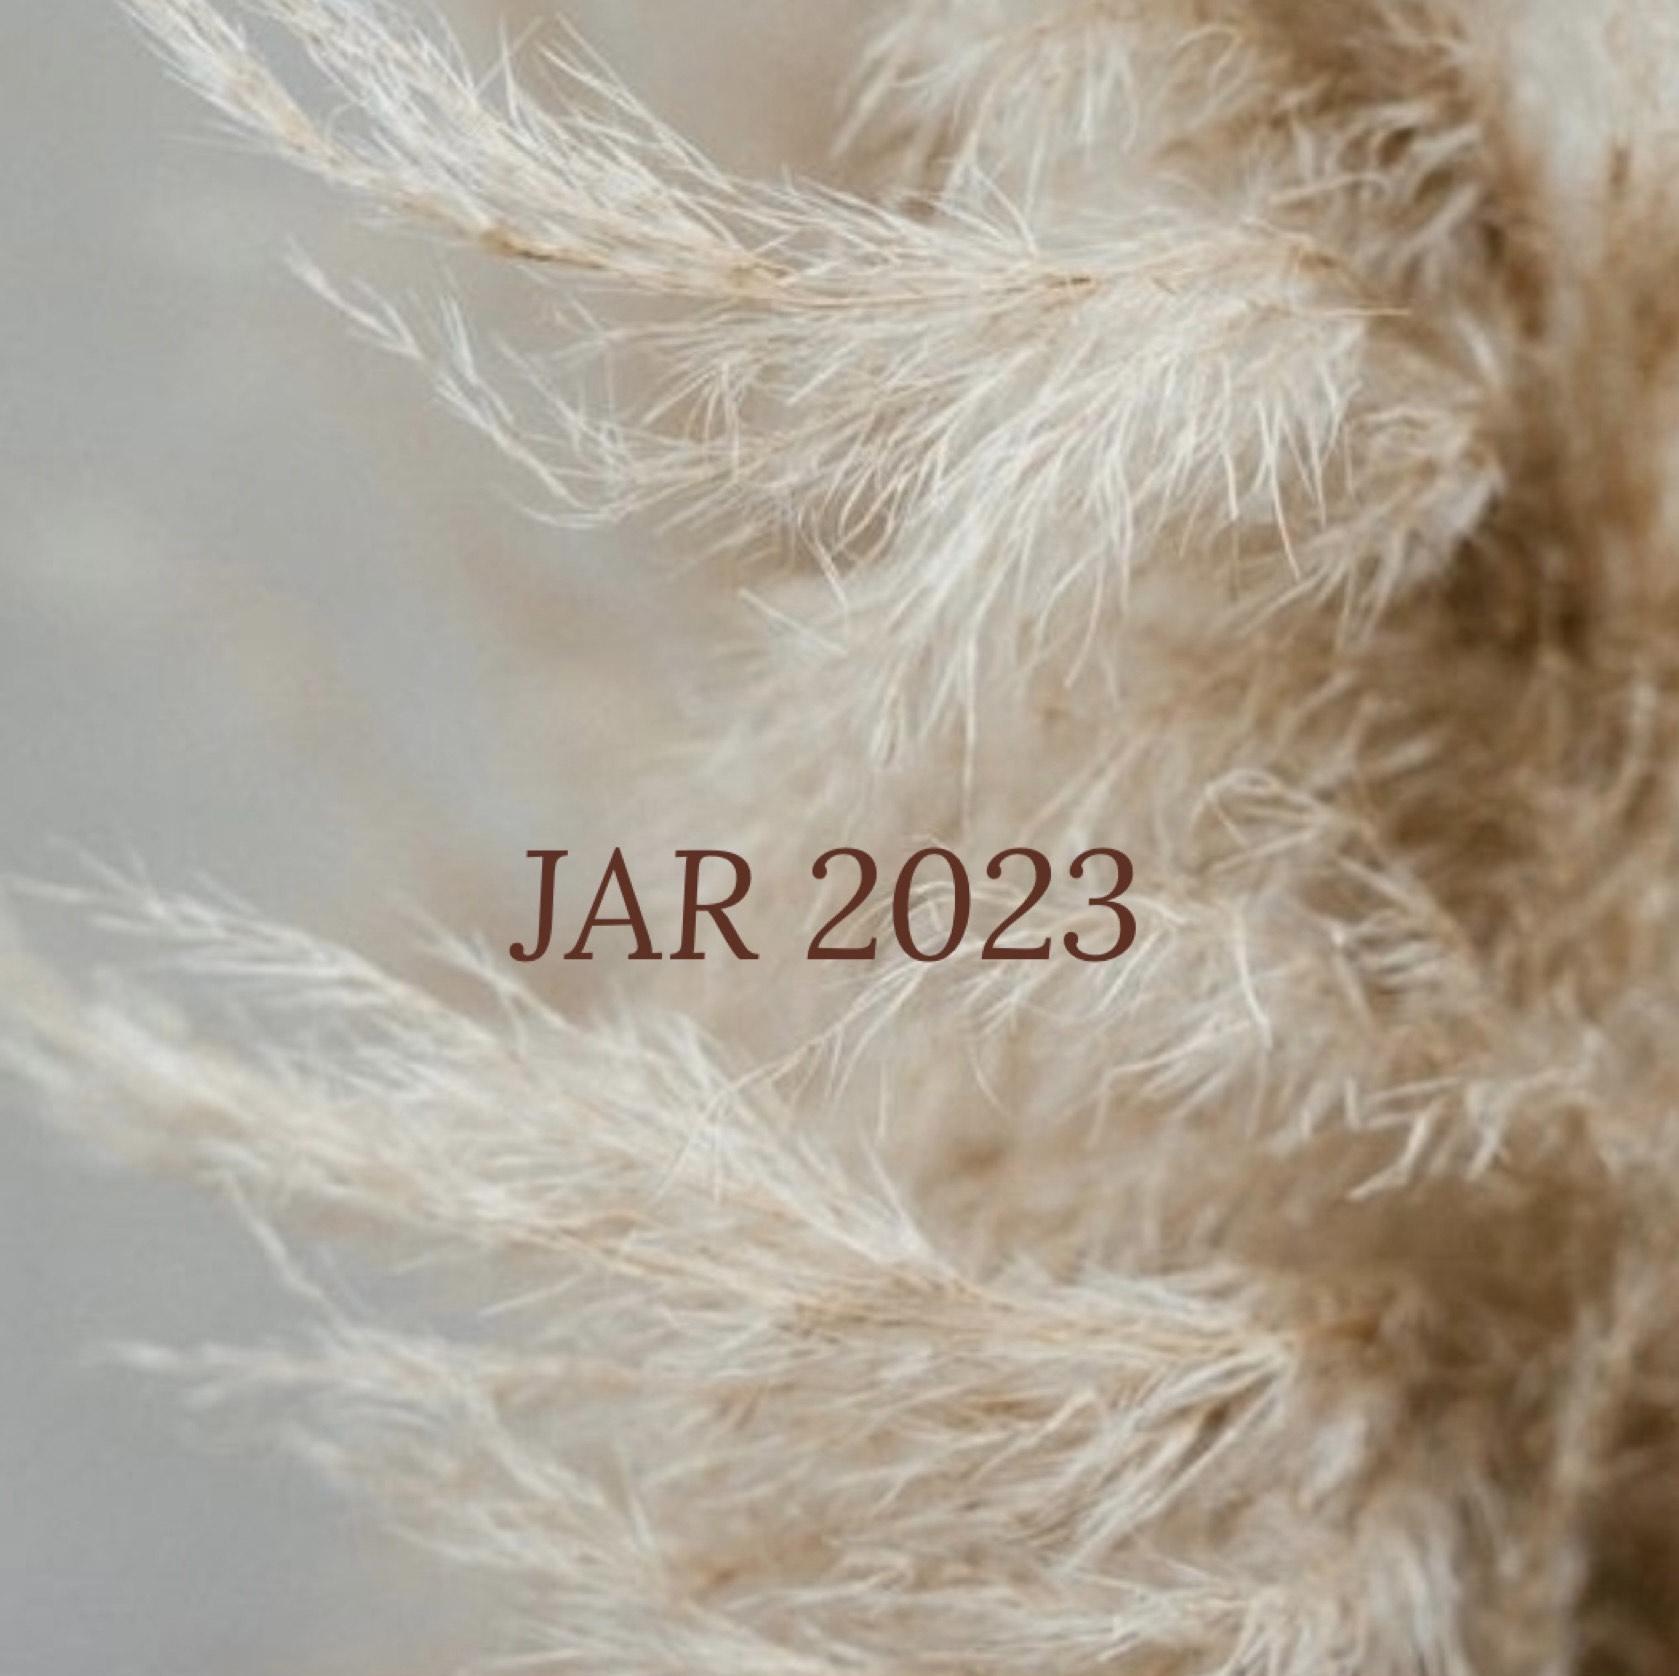 Jar 2023